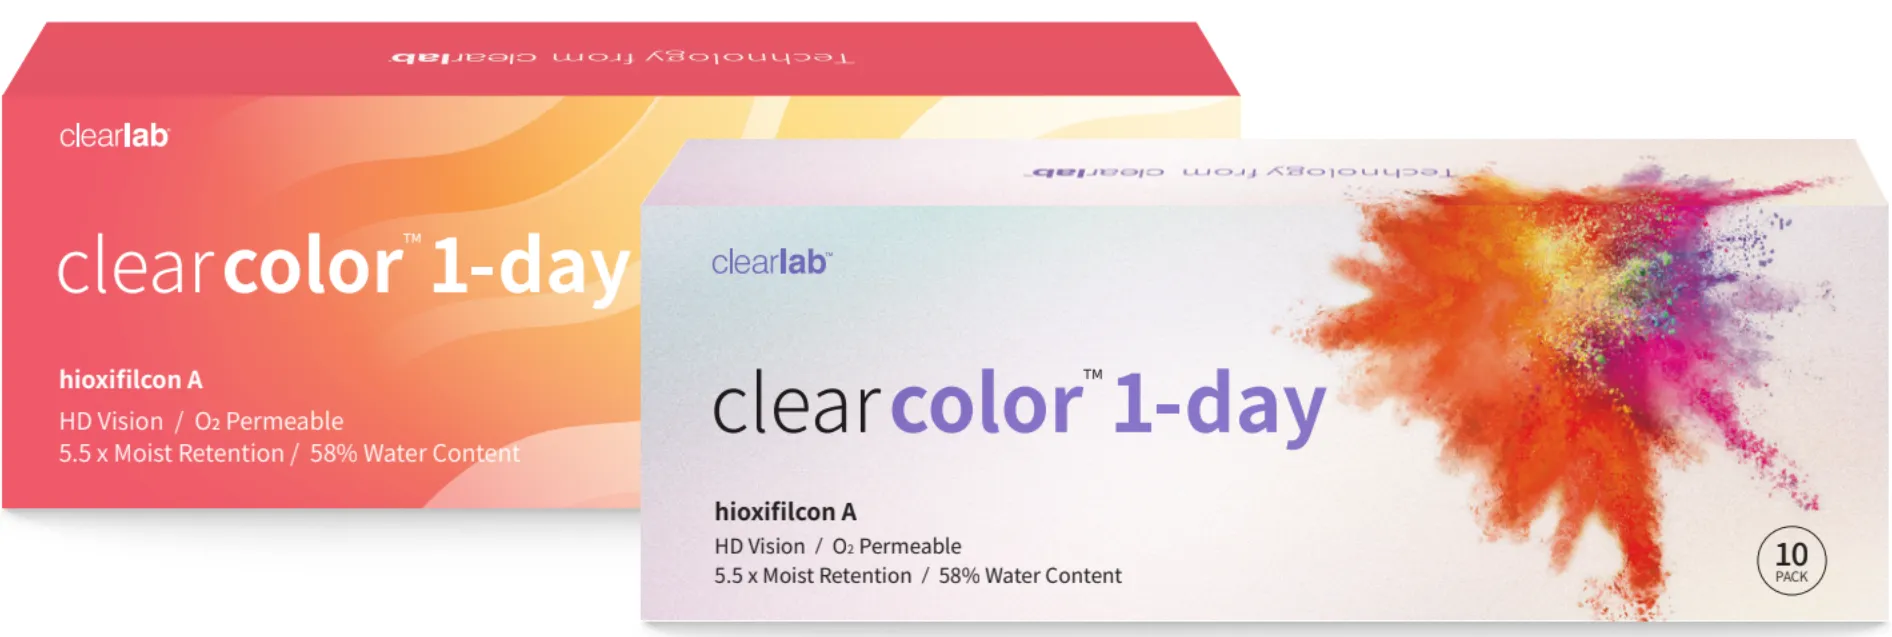 ClearLab ClearColor 1-Day kolorowe soczewki kontaktowe szare 0,00,  10 szt.